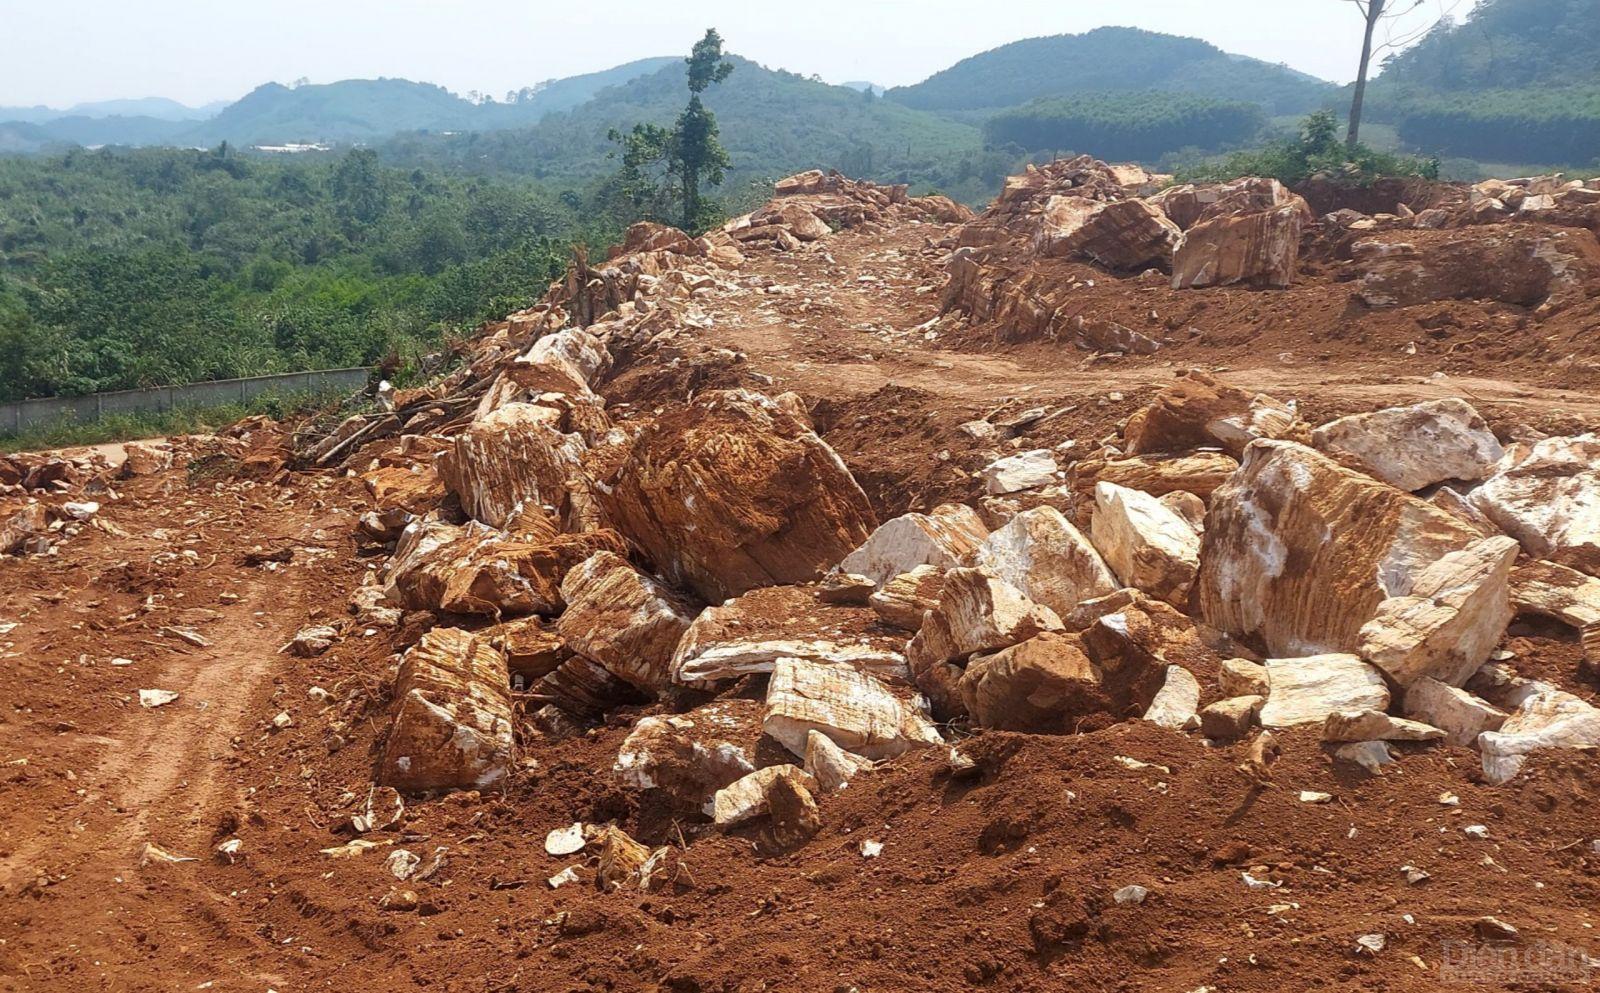 Tình trạng đào bới để khai thác khoáng sản trái phép đã làm tan hoang cả một vùng đồi ở xóm Côn Sơn, xã Hạ Sơn, huyện Quỳ Hợp, Nghệ An